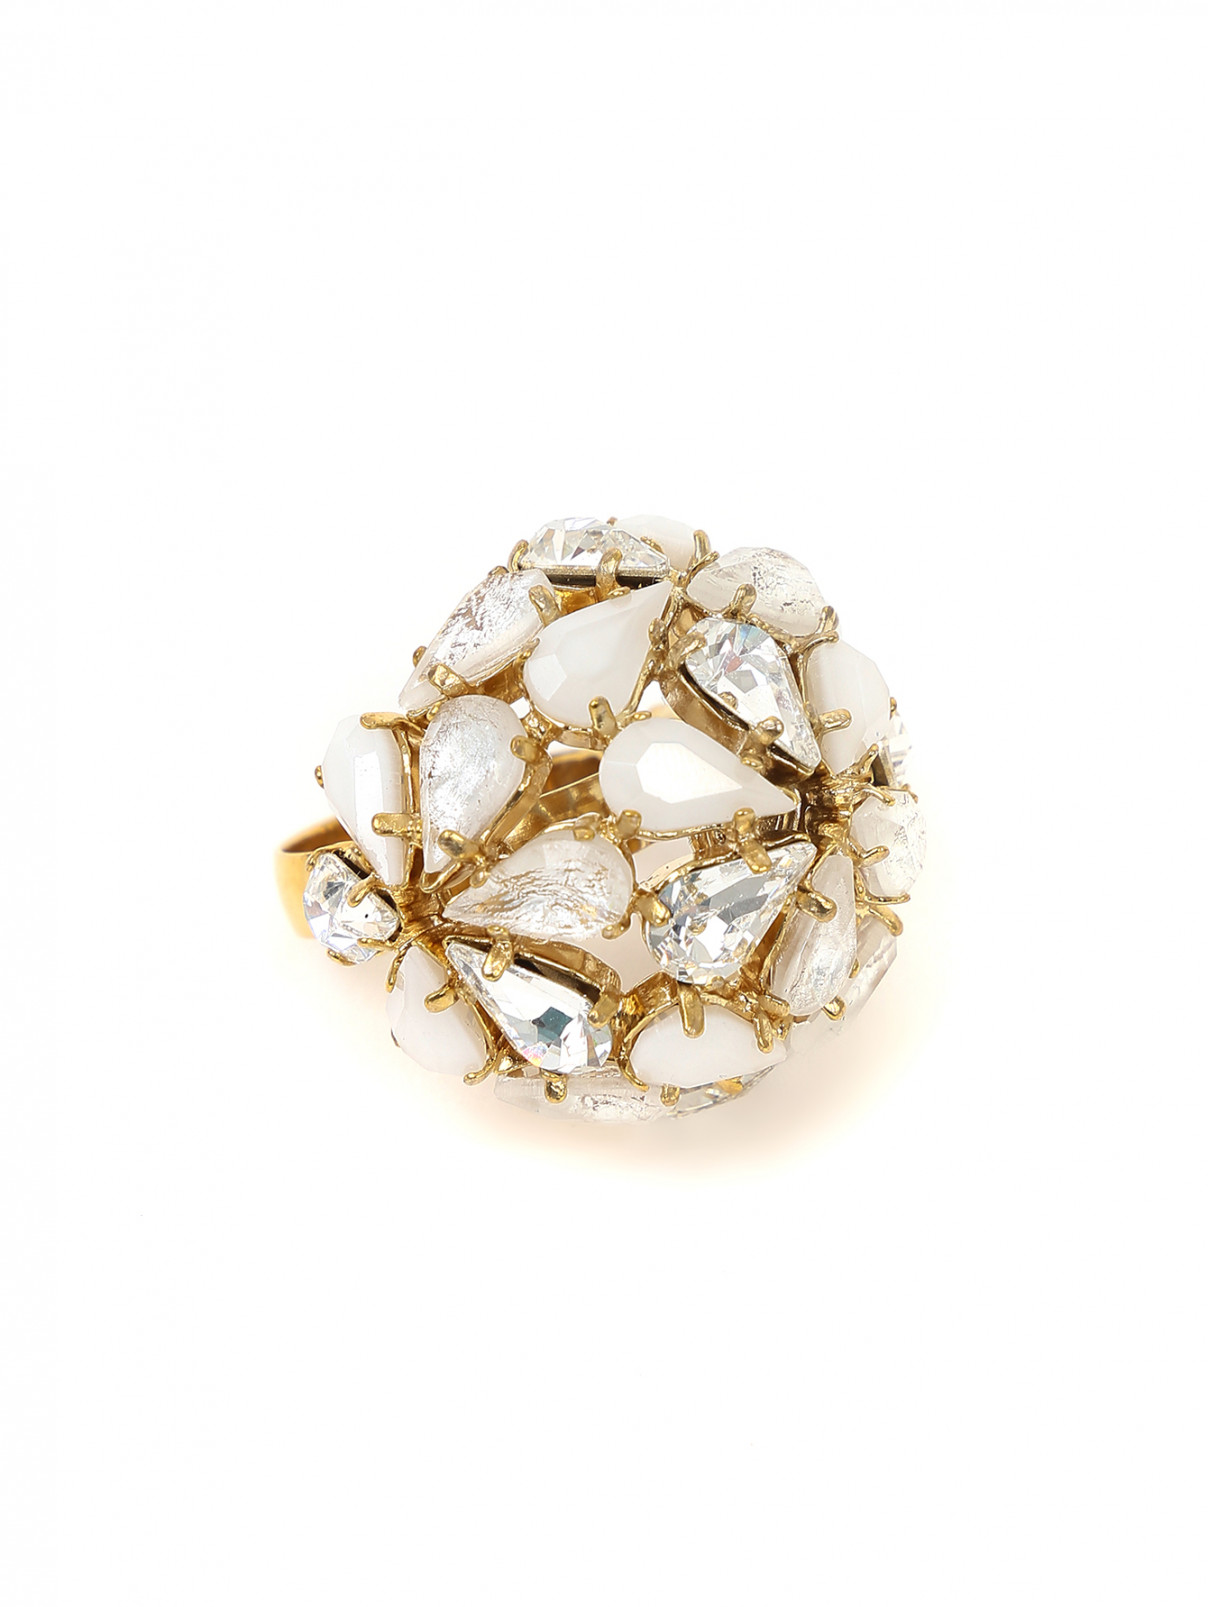 Кольцо с кристаллами Swarovski и камнями Philippe Ferrandis  –  Общий вид  – Цвет:  Белый